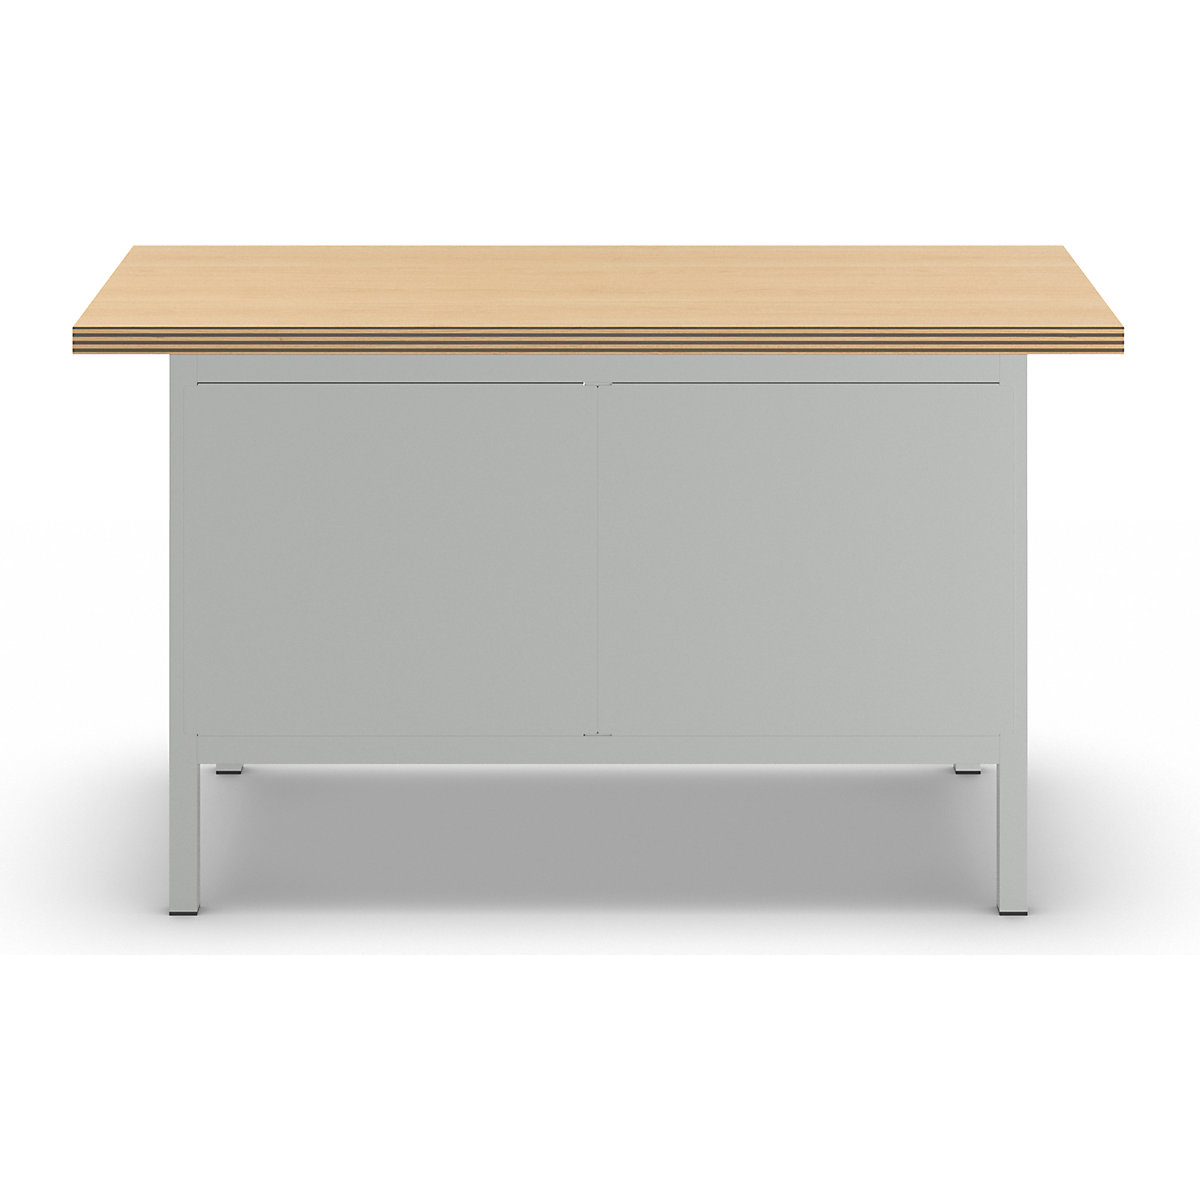 Stół warsztatowy z blatem z multipleksu, konstrukcja ramowa – LISTA (Zdjęcie produktu 13)-12